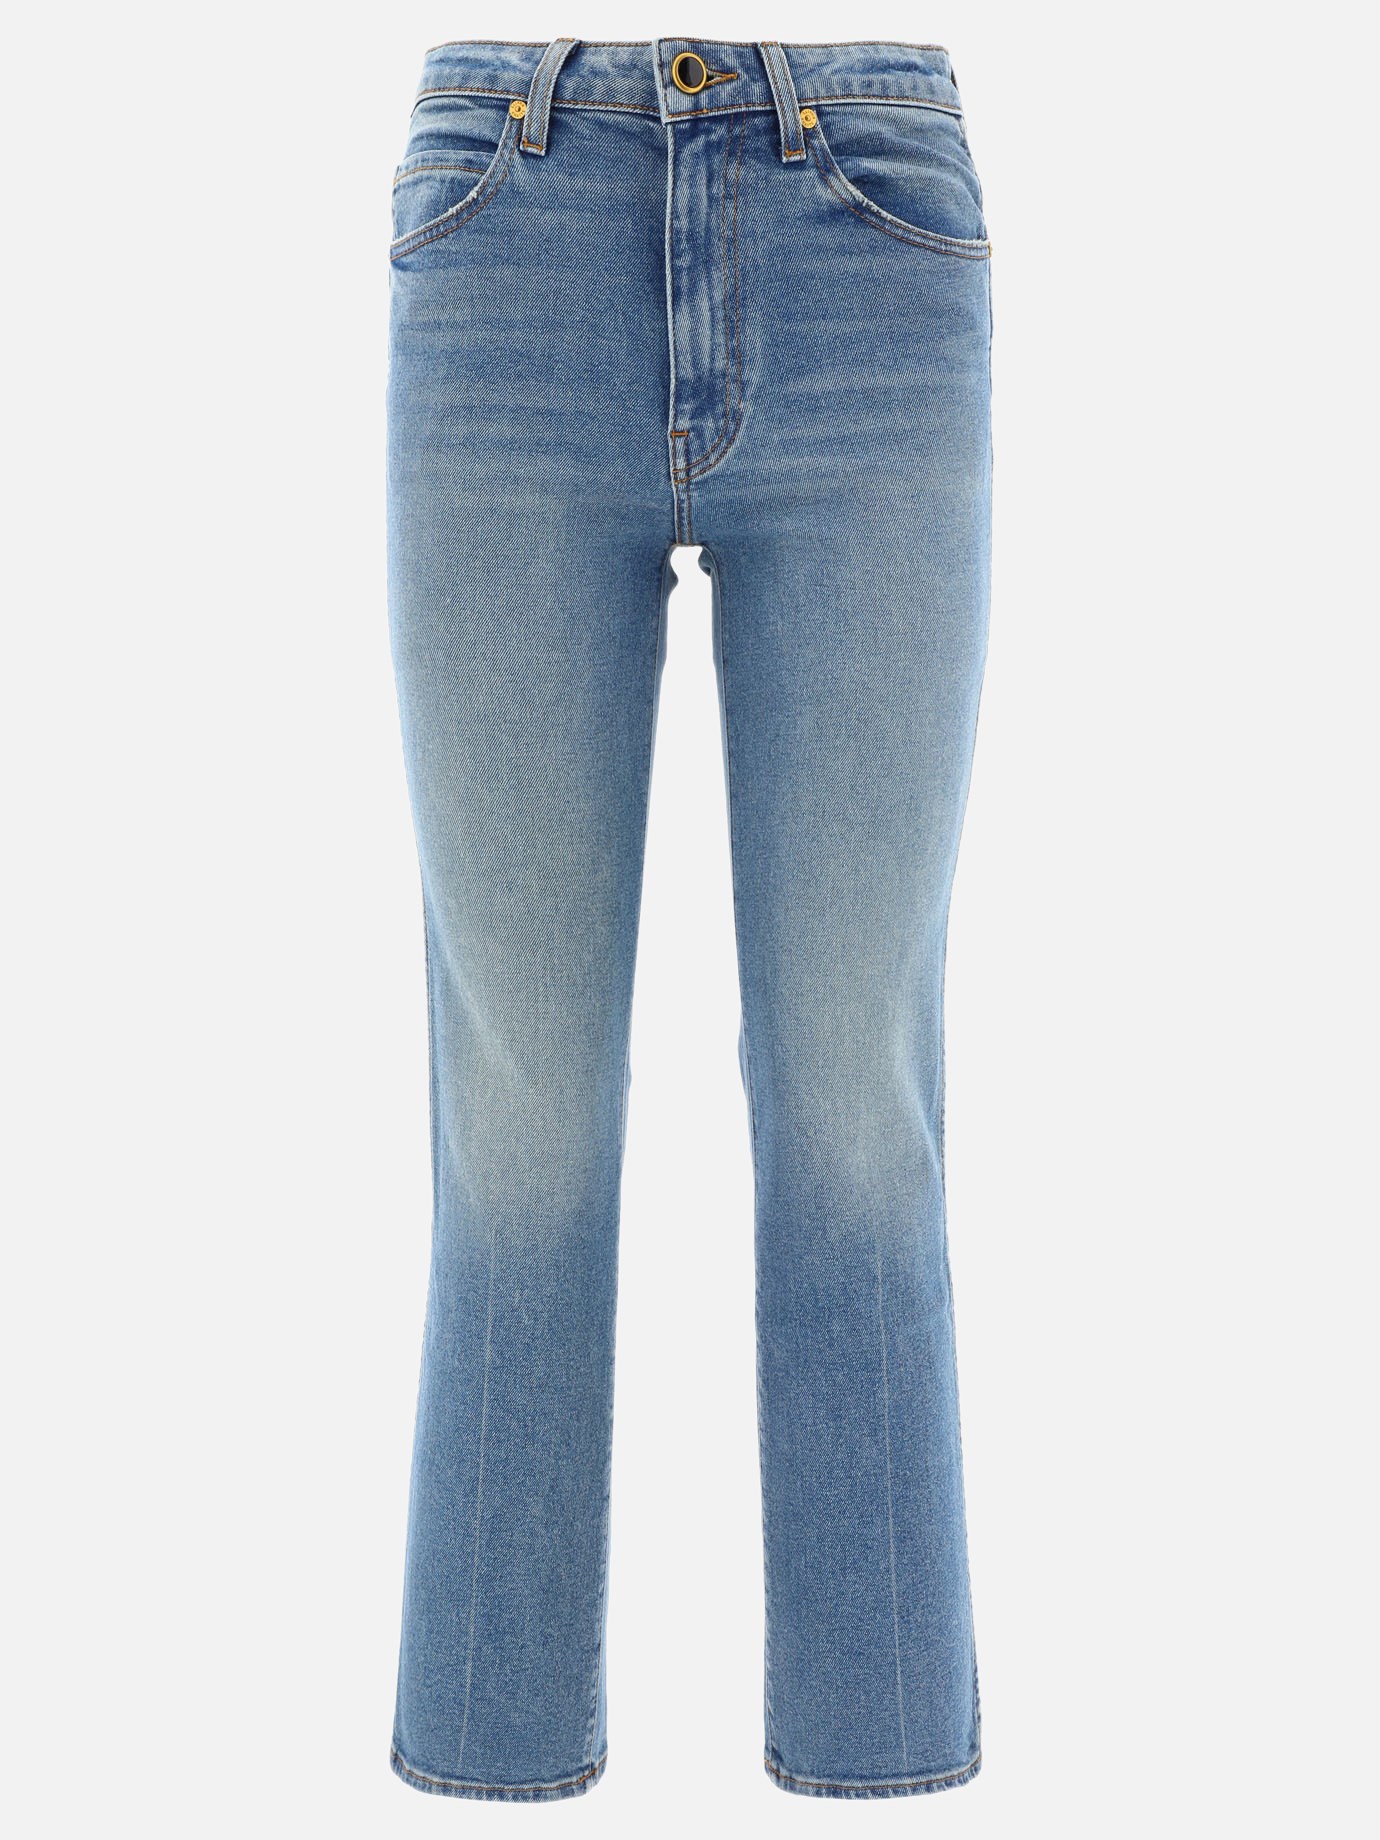 Jeans  Vivian by Khaite - 0